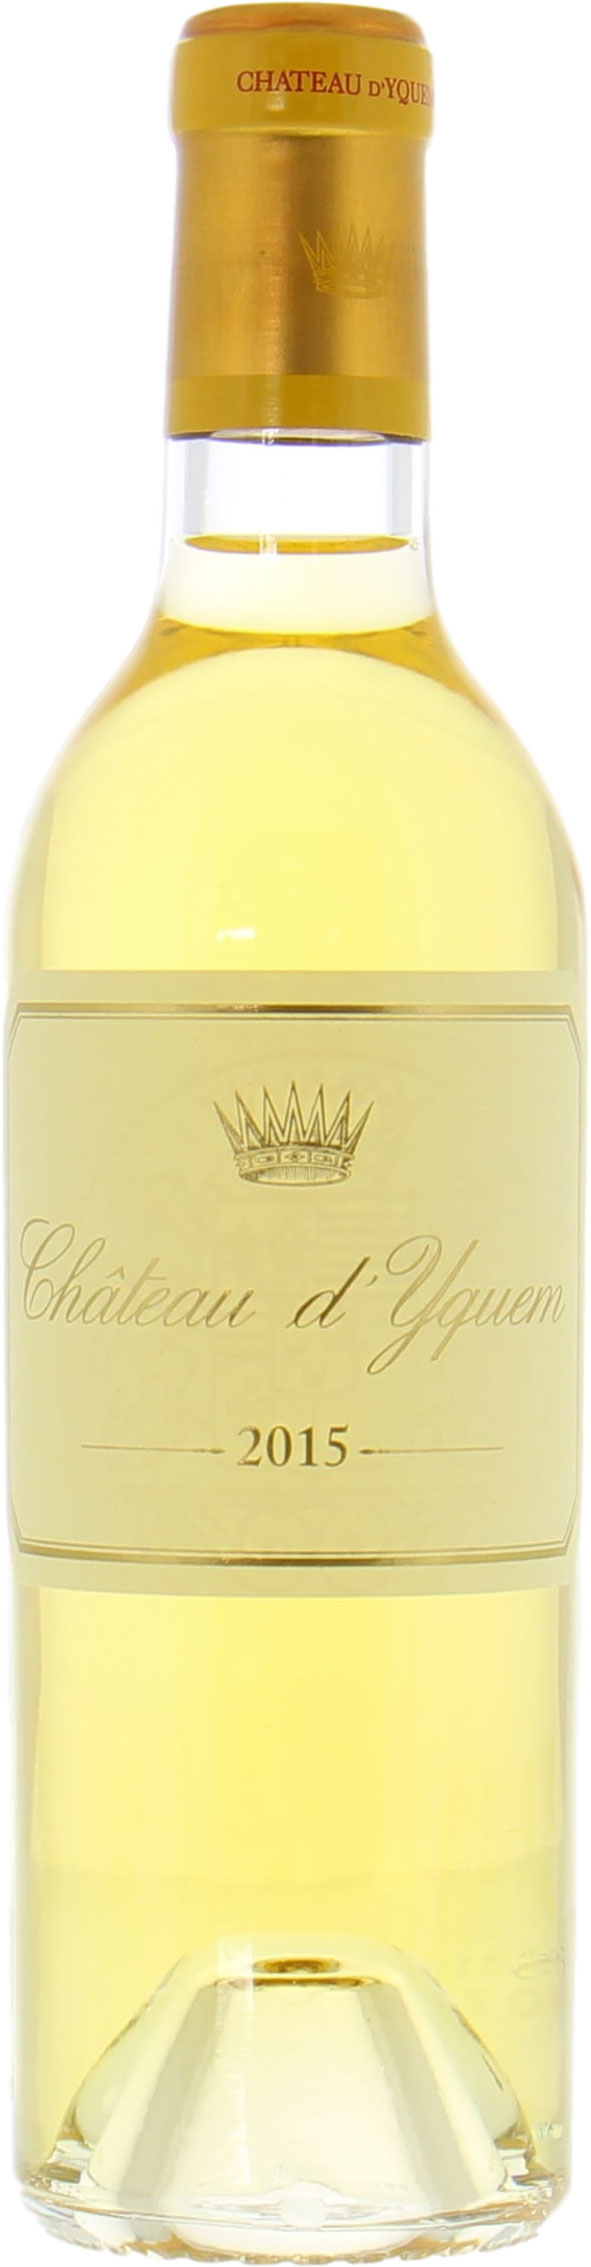 Chateau D'Yquem - Chateau D'Yquem 2015